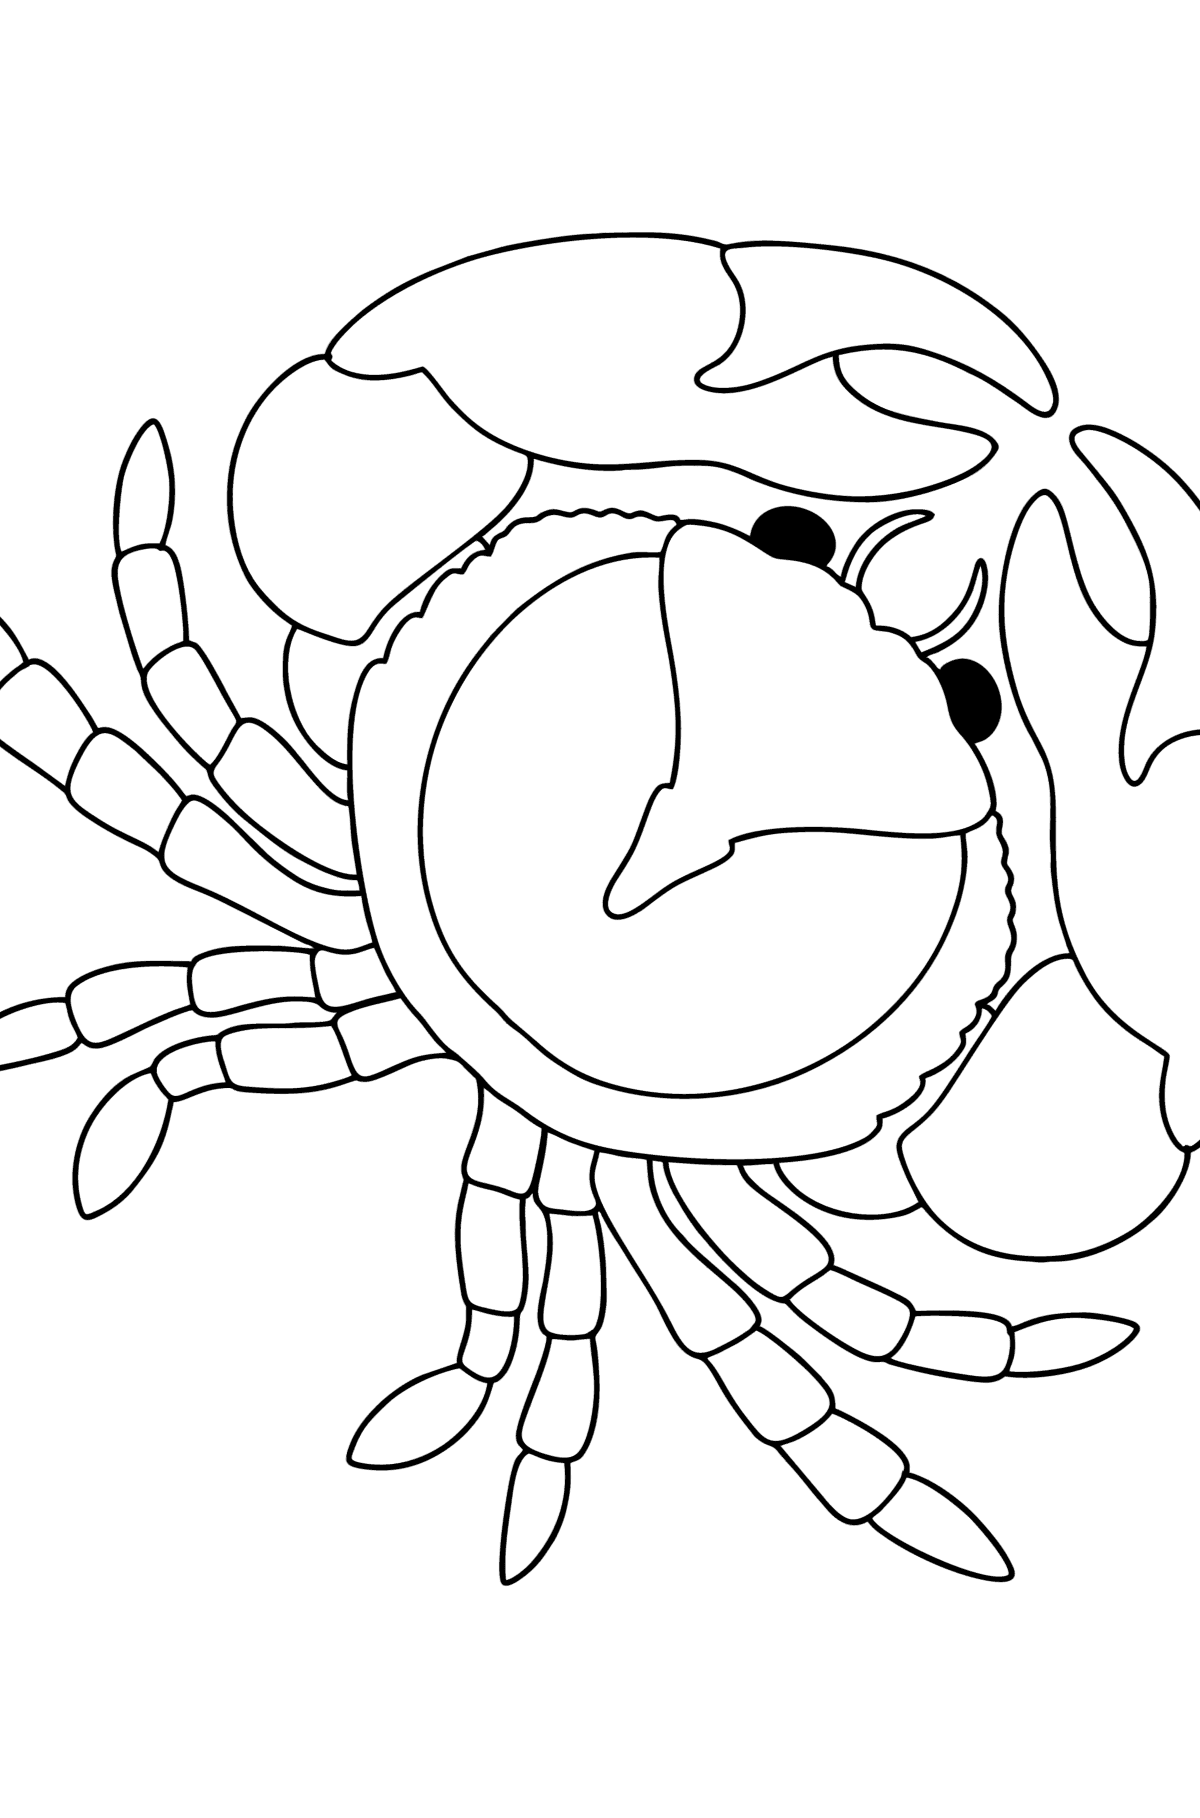 Dibujo de Cangrejo de mar para colorear - Dibujos para Colorear para Niños